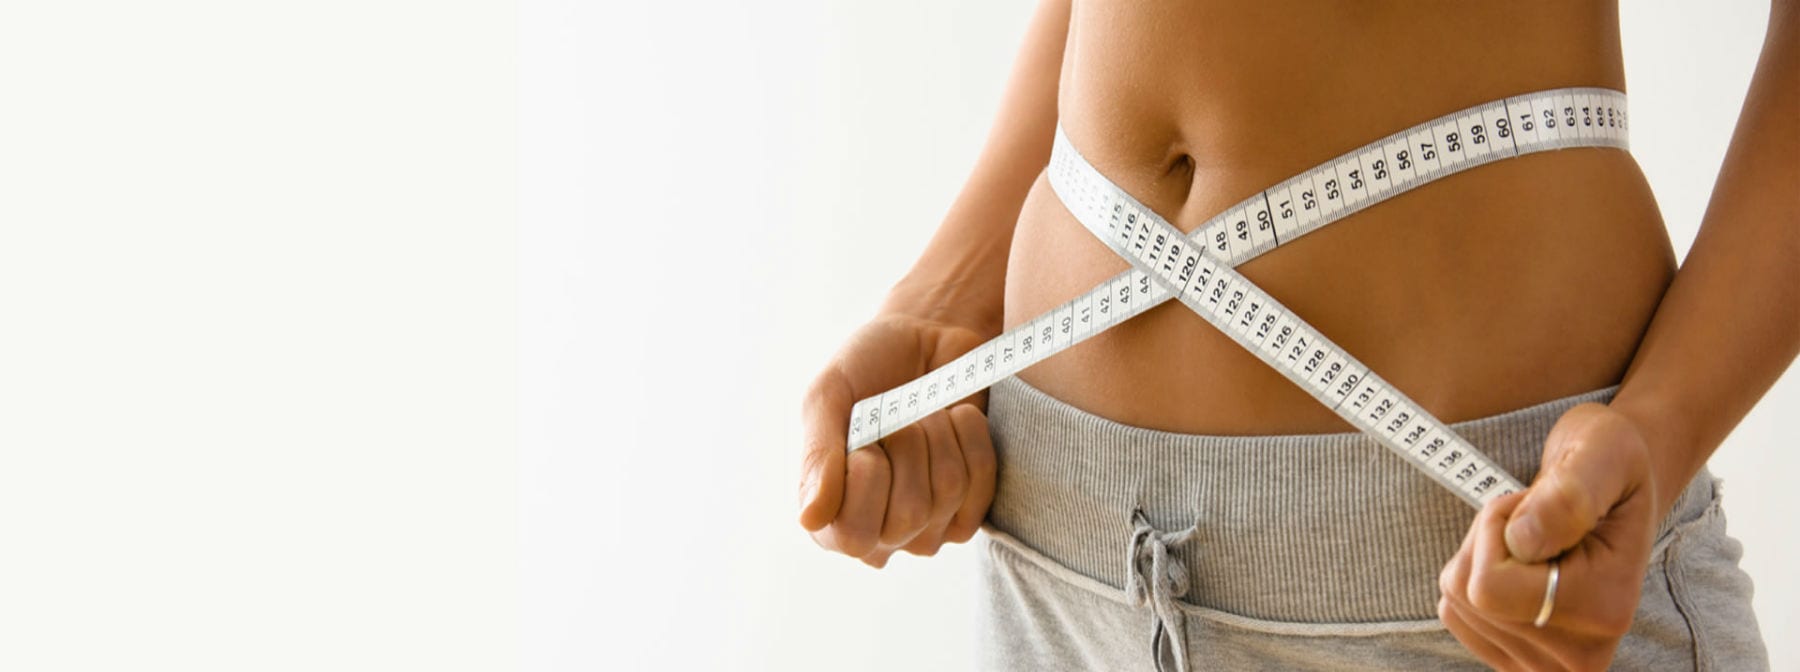 Как похудеть к лету без жестких диет?